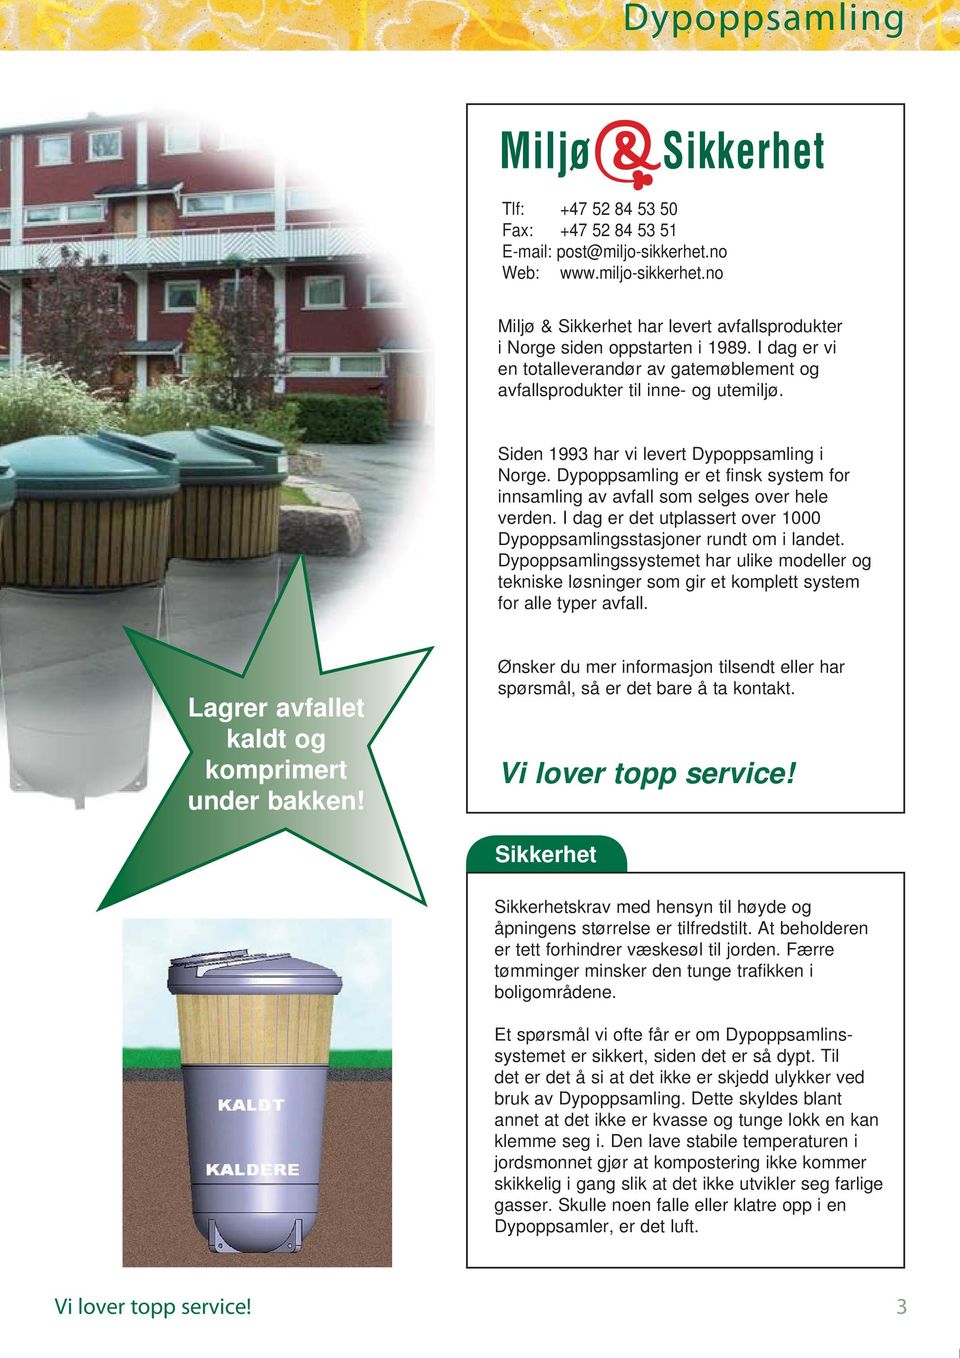 Dypoppsamling er et finsk system for innsamling av avfall som selges over hele verden. I dag er det utplassert over 1000 Dypoppsamlingsstasjoner rundt om i landet.